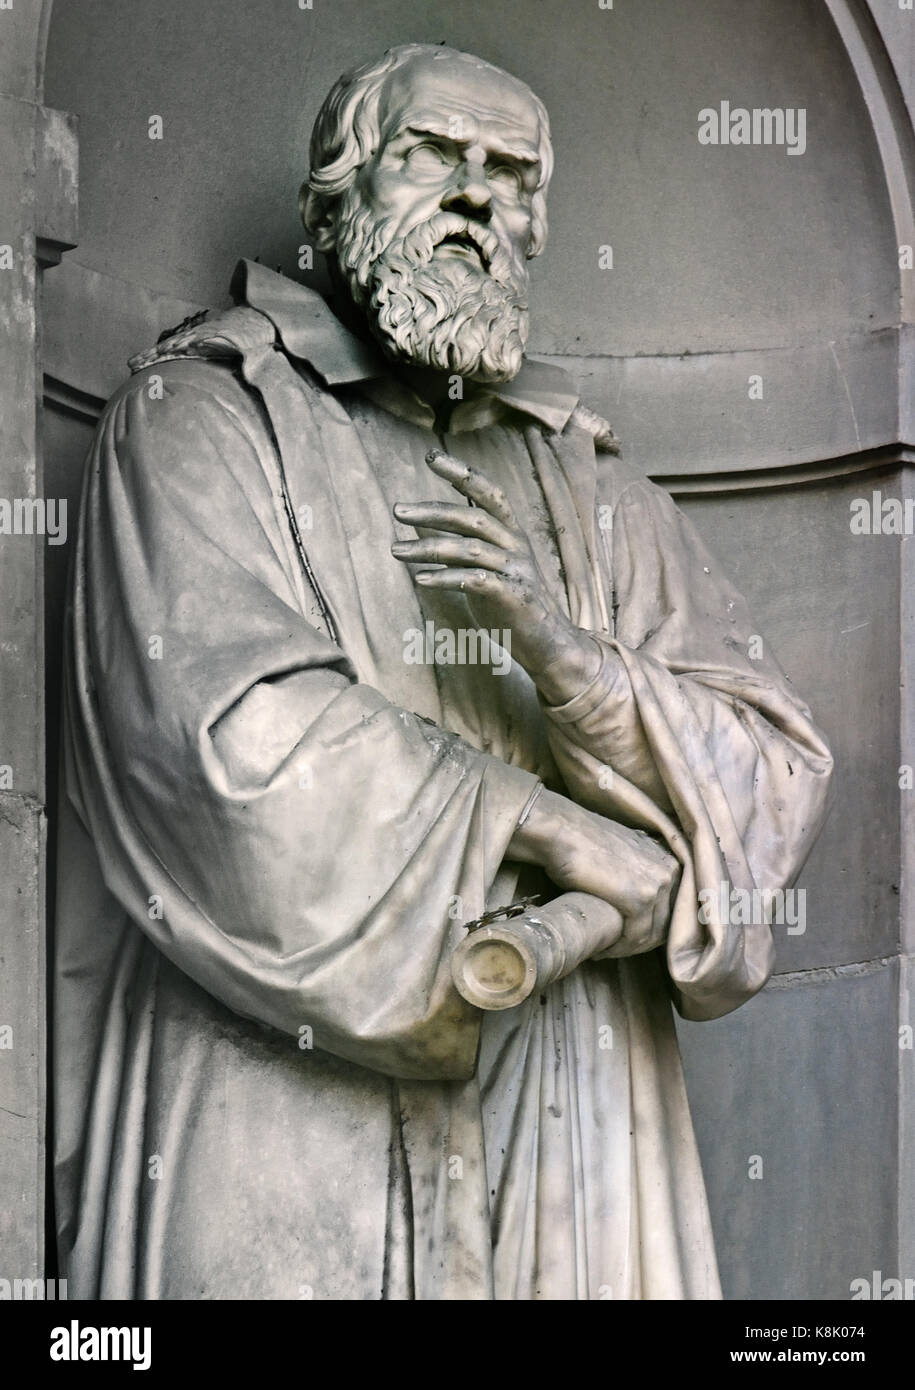 Galileo Galilei 1564 - 1642 era un italiano polymath: astronomo e fisico, ingegnere, filosofo e matematico.Statua della Galleria degli Uffizi di Firenze e la toscana italia. da Aristodemo Costoli Foto Stock